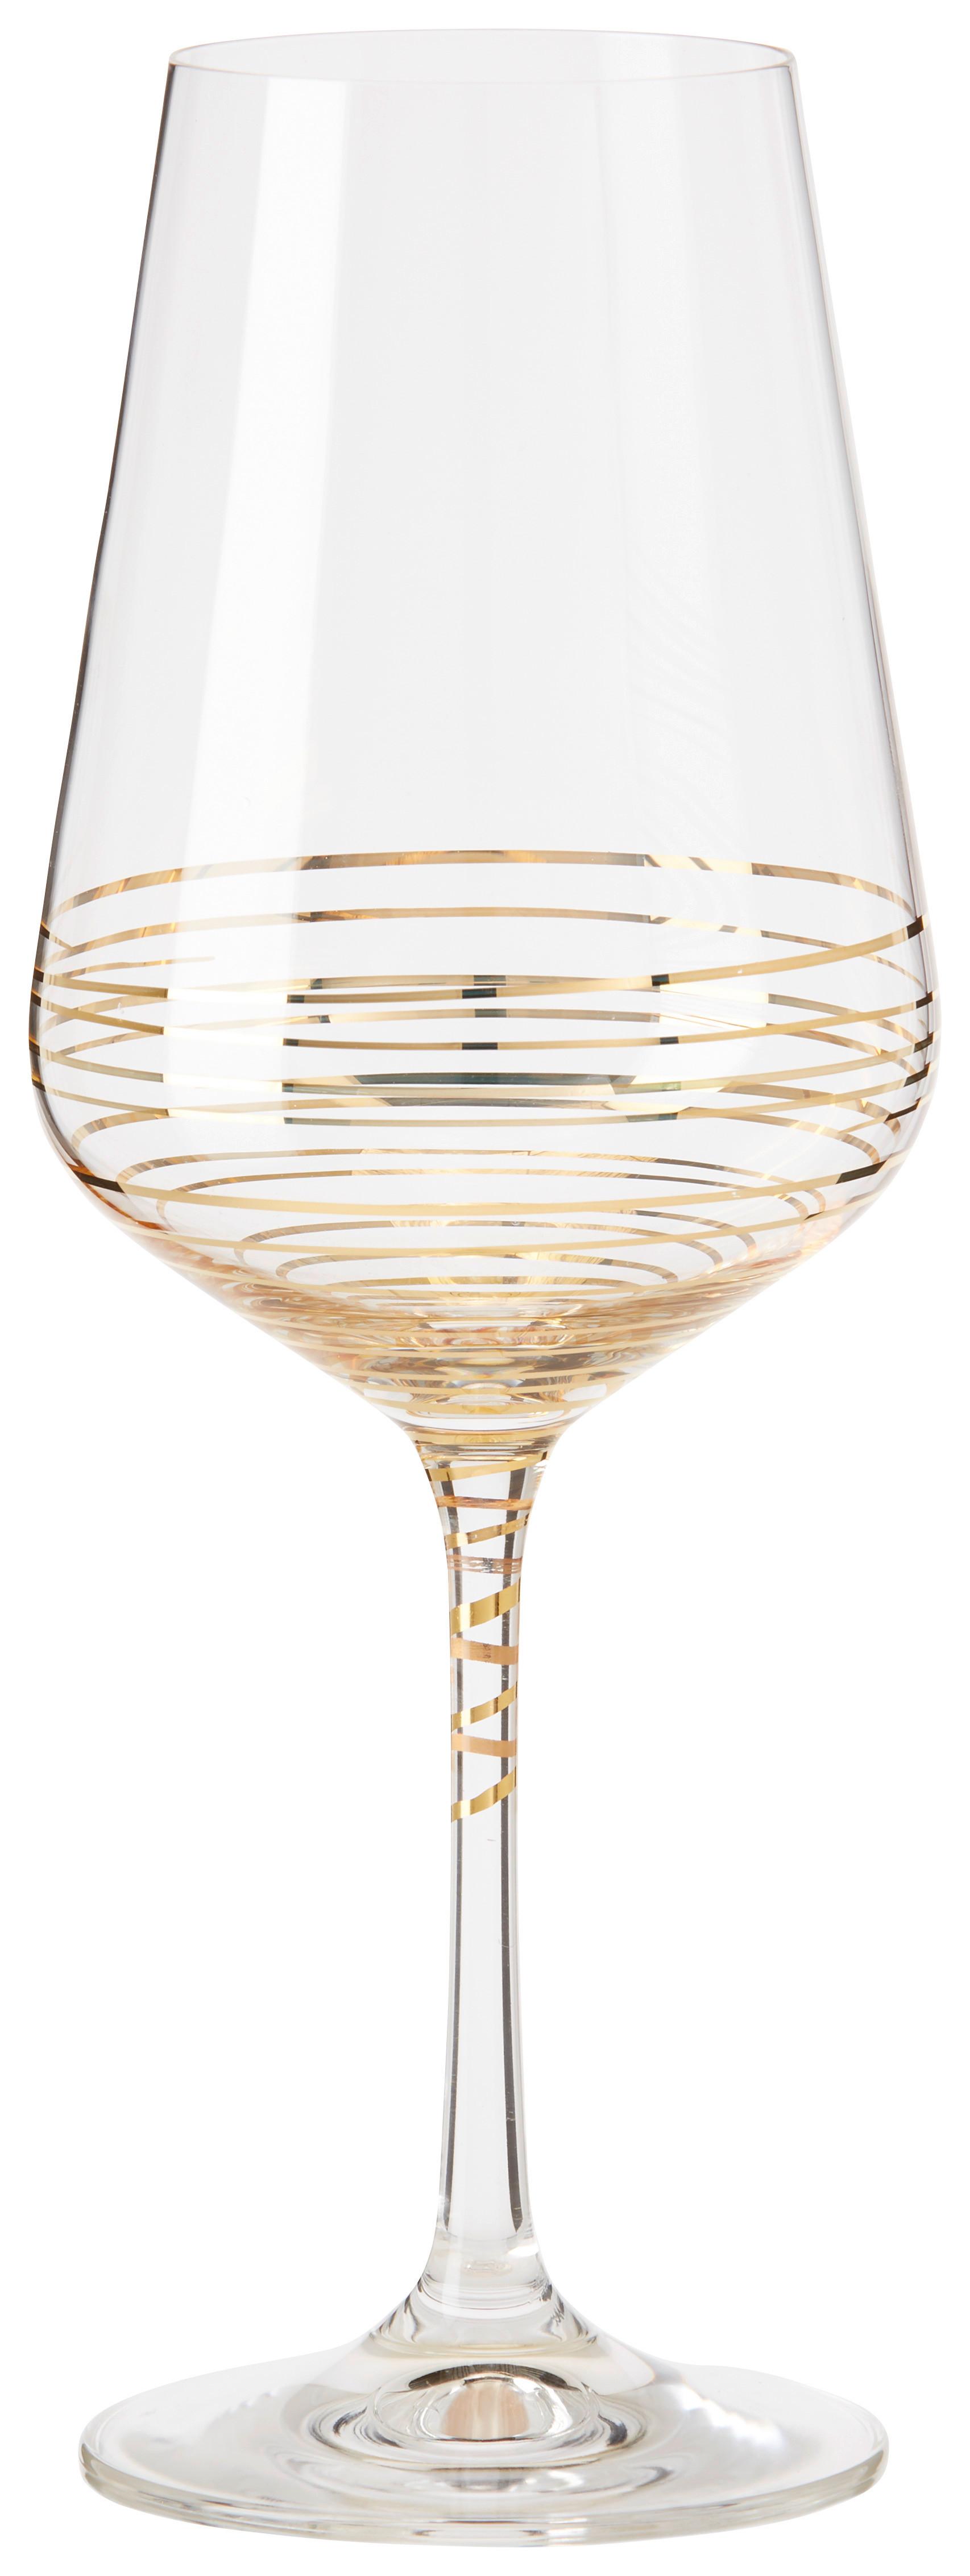 Pahar pentru vin roșu Elegance - clar/auriu, Modern, sticlă (0,55l) - Bohemia